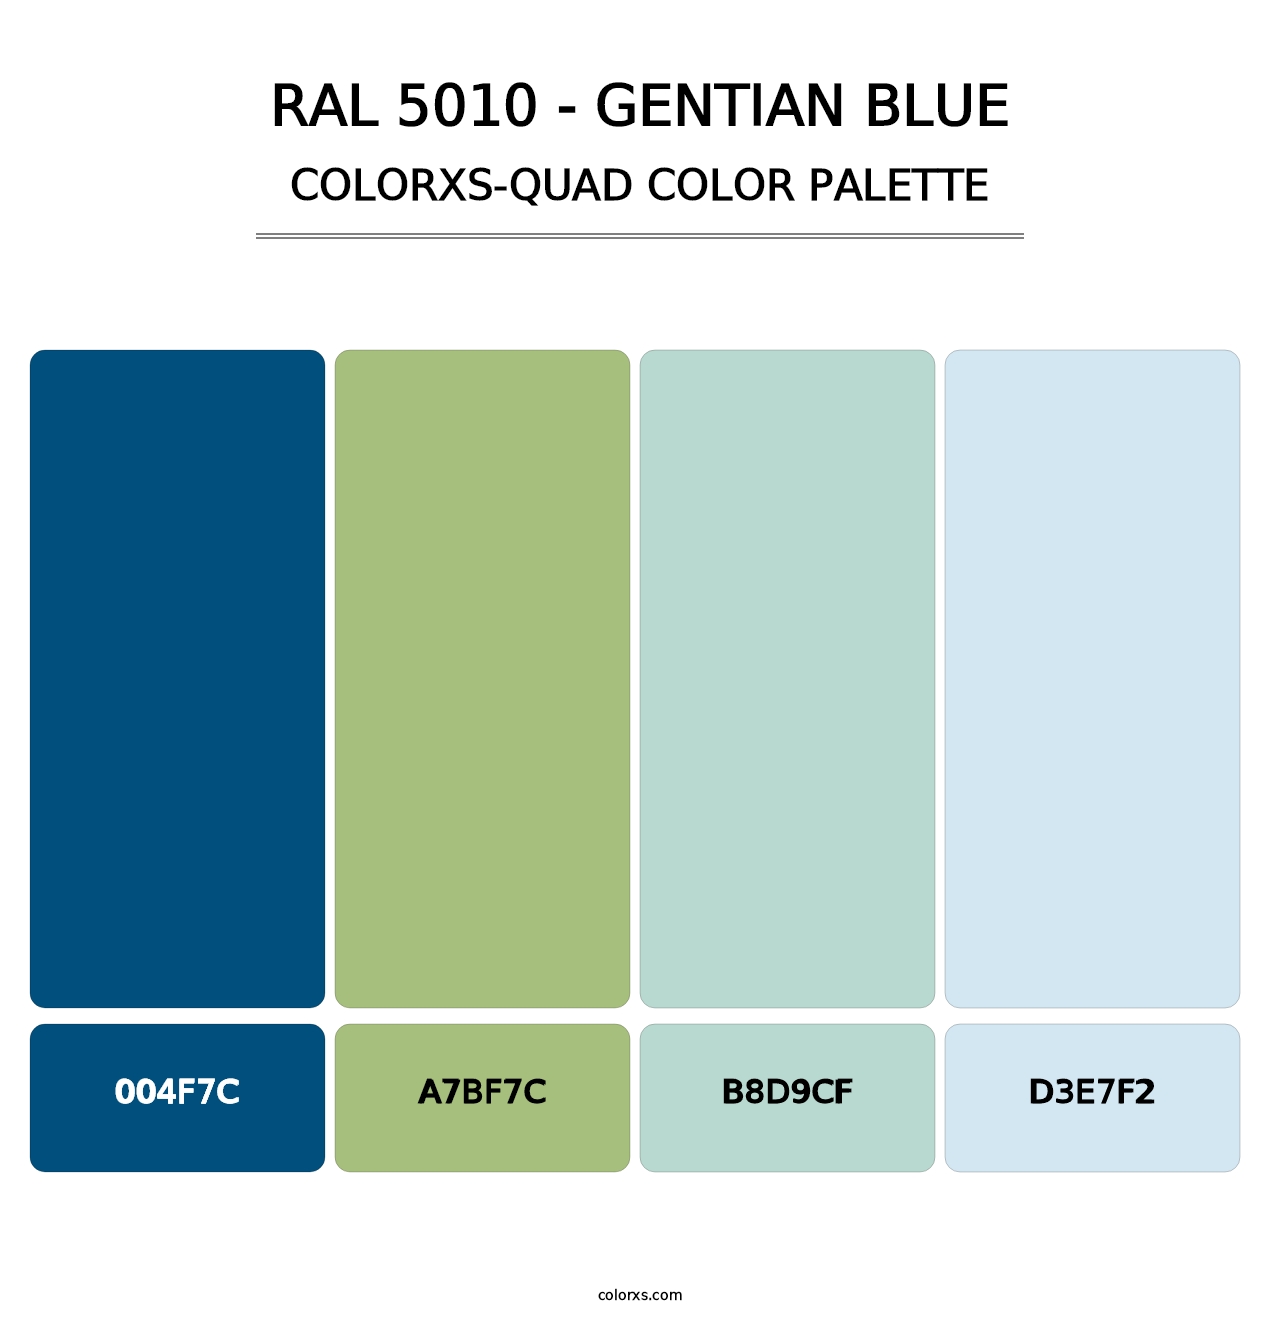 RAL 5010 - Gentian Blue - Colorxs Quad Palette